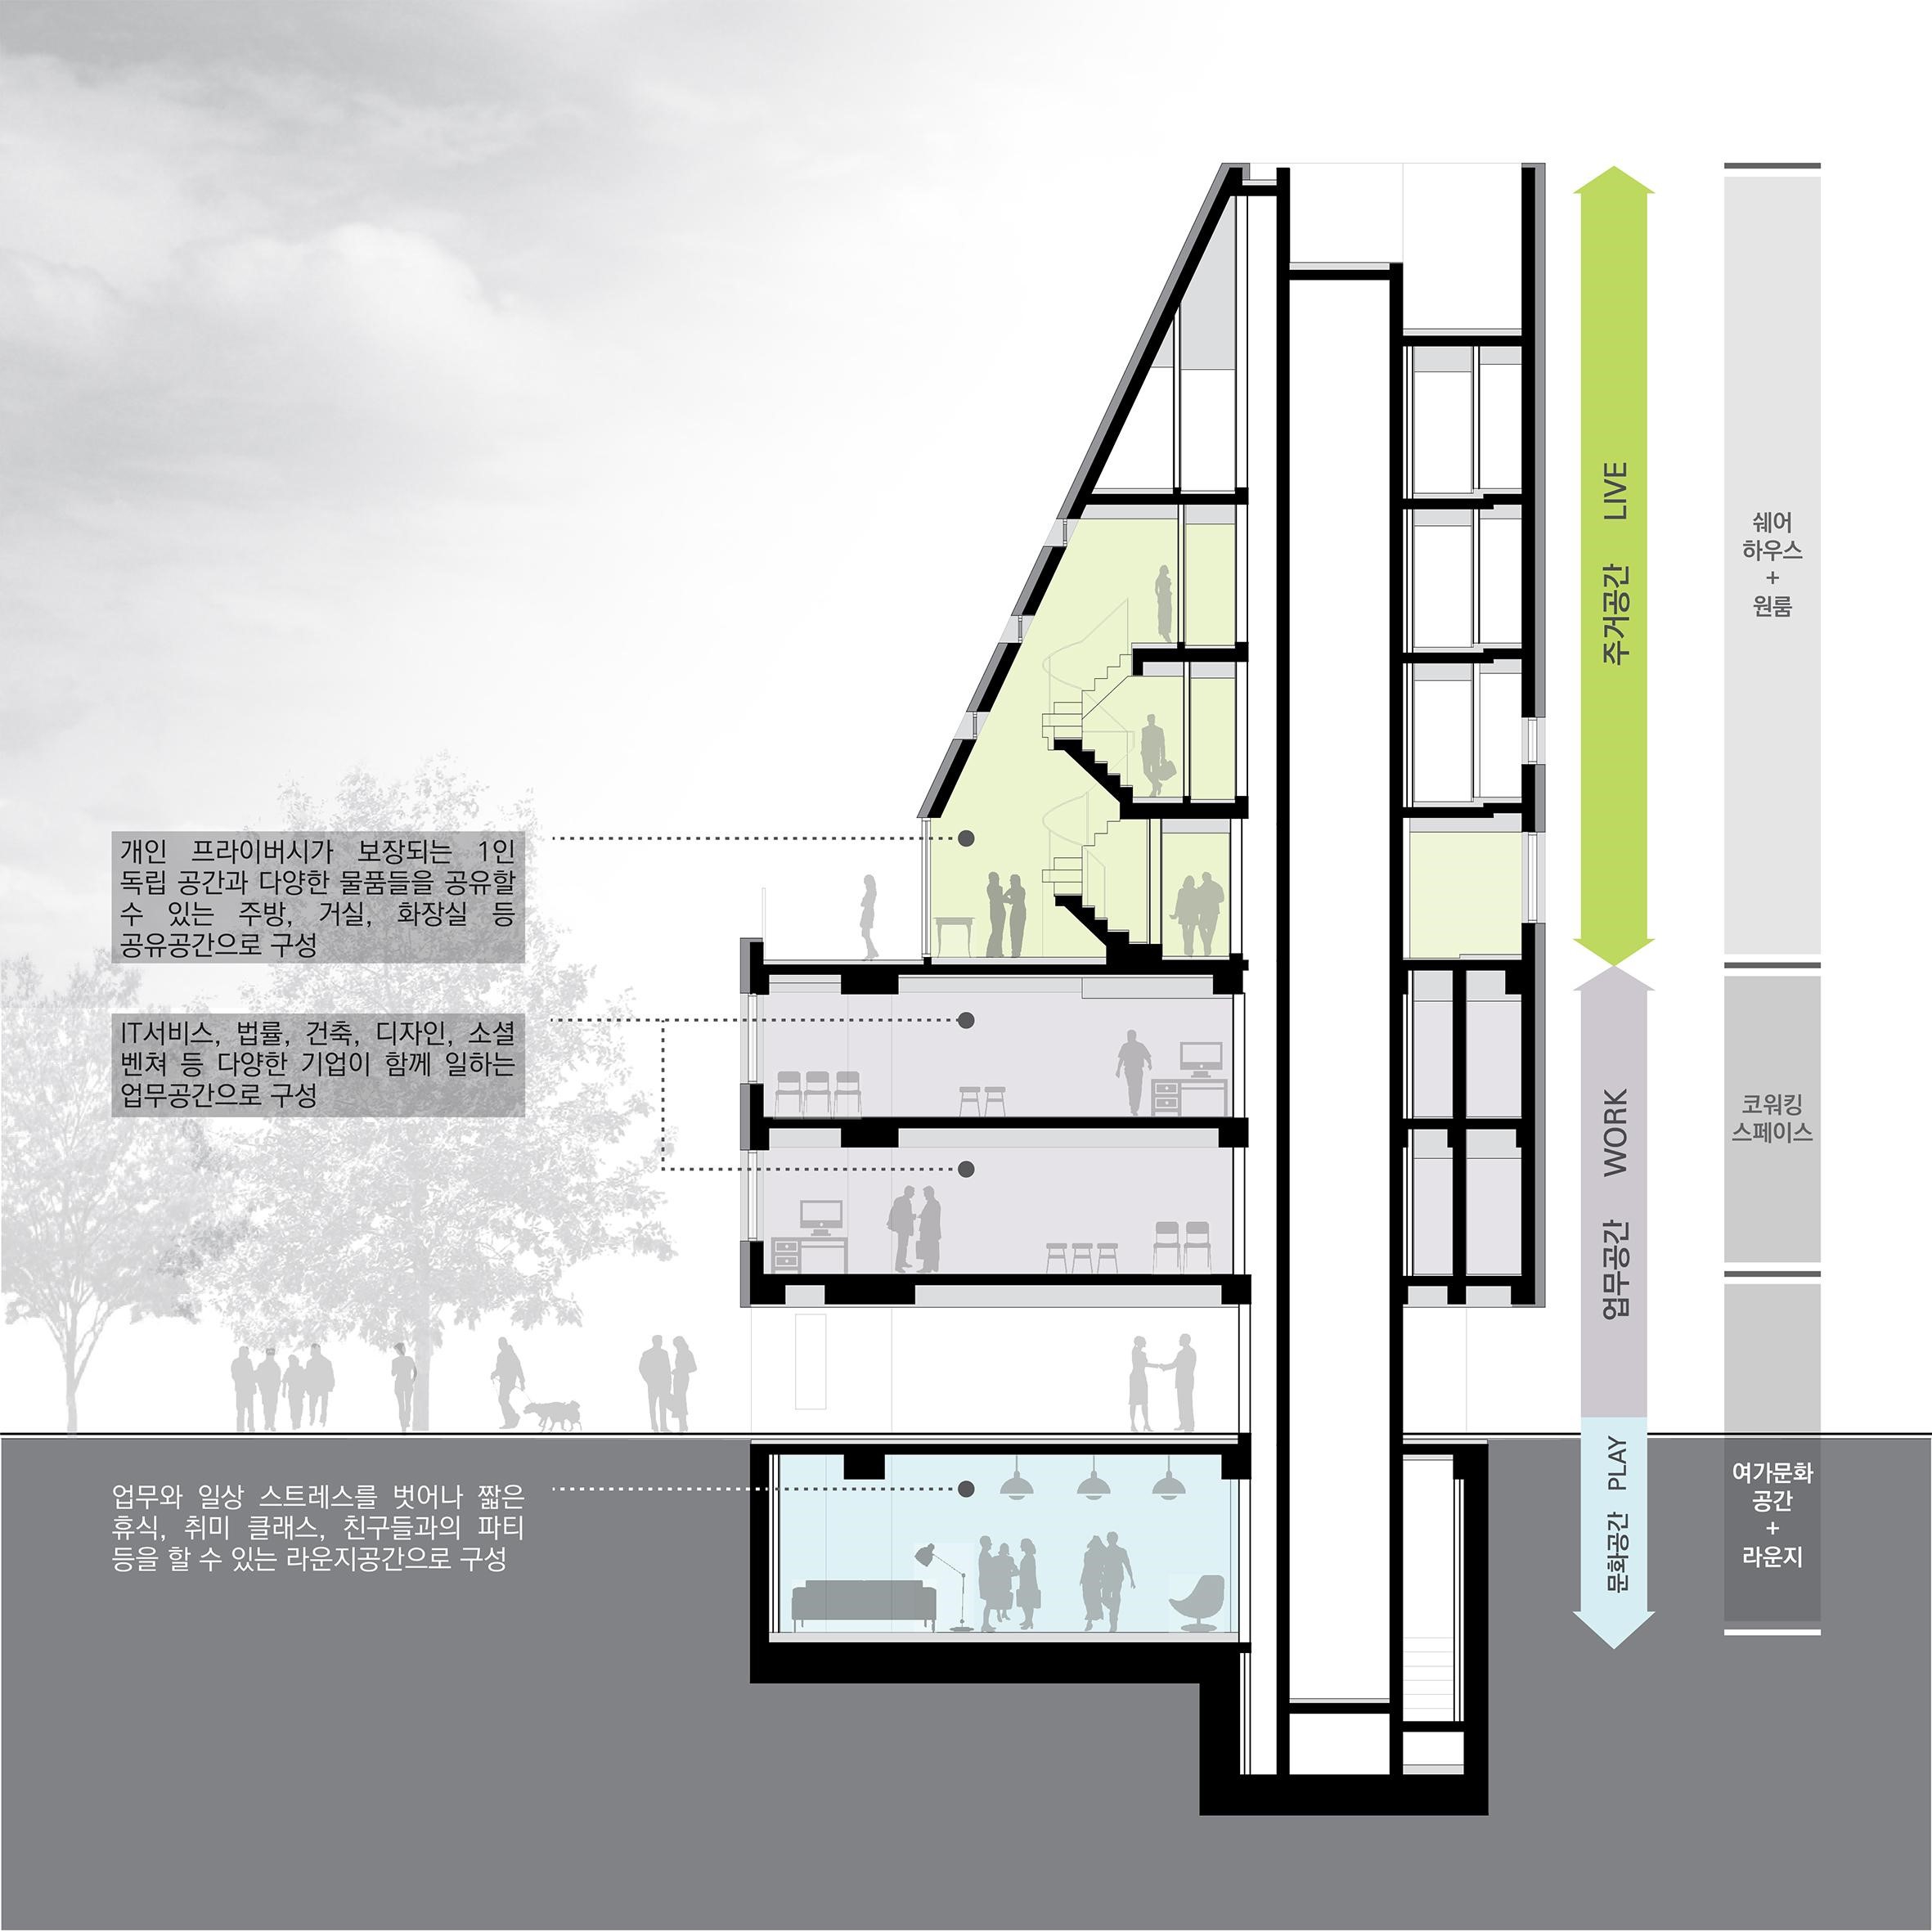 ▲  건물전체 조감도(지하는 복합문화공간, 2~3층은 오피스 공간, 4층 이상은 셰어하우스등 주거공간)